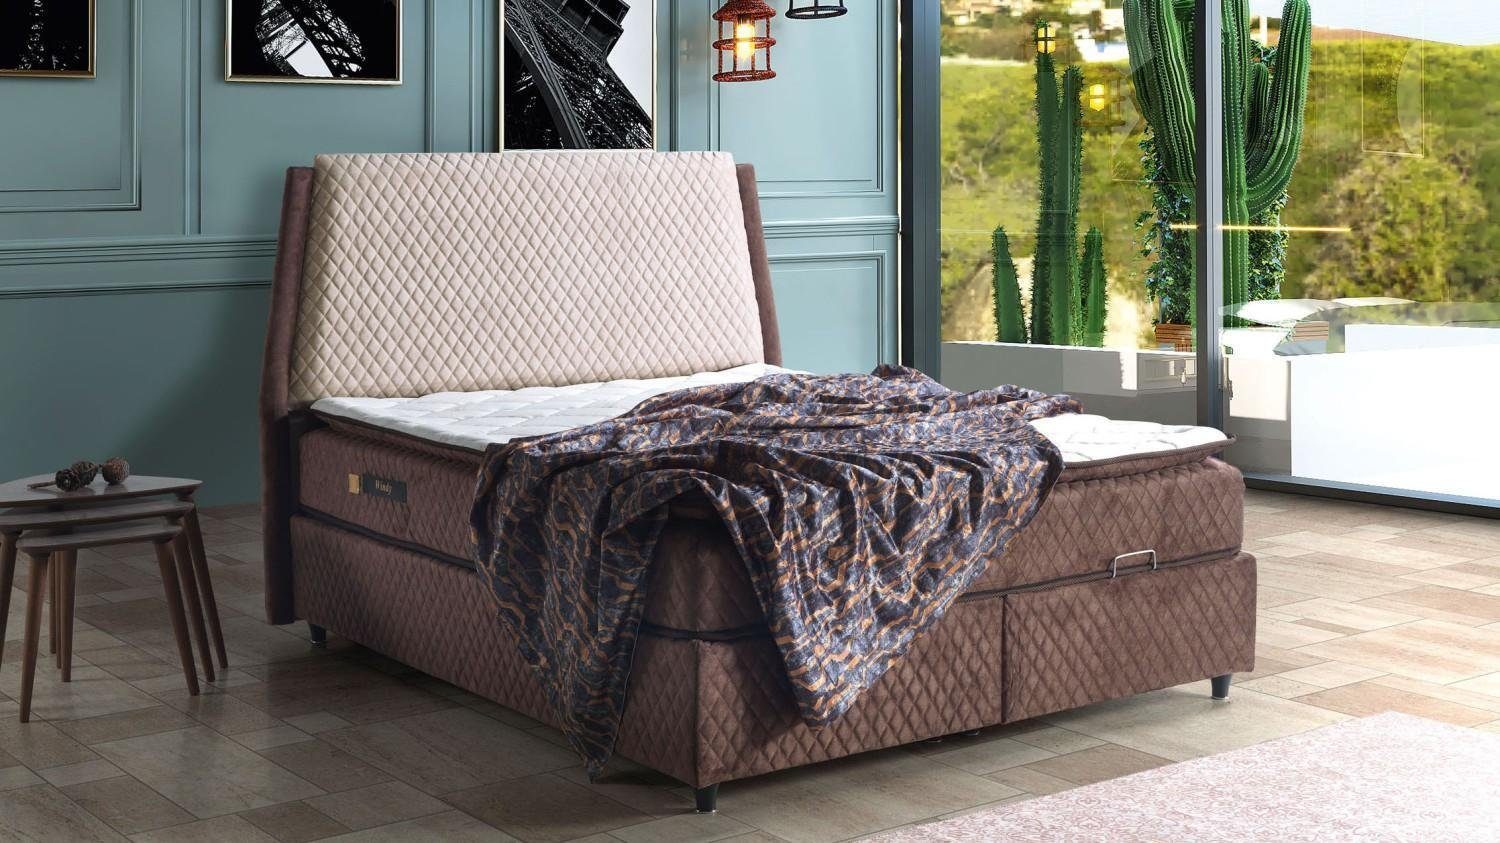 JVmoebel Bett Bett Design Betten Luxus Betten Polster Schlafzimmer Möbel Boxspring (Bett), Made In Europe